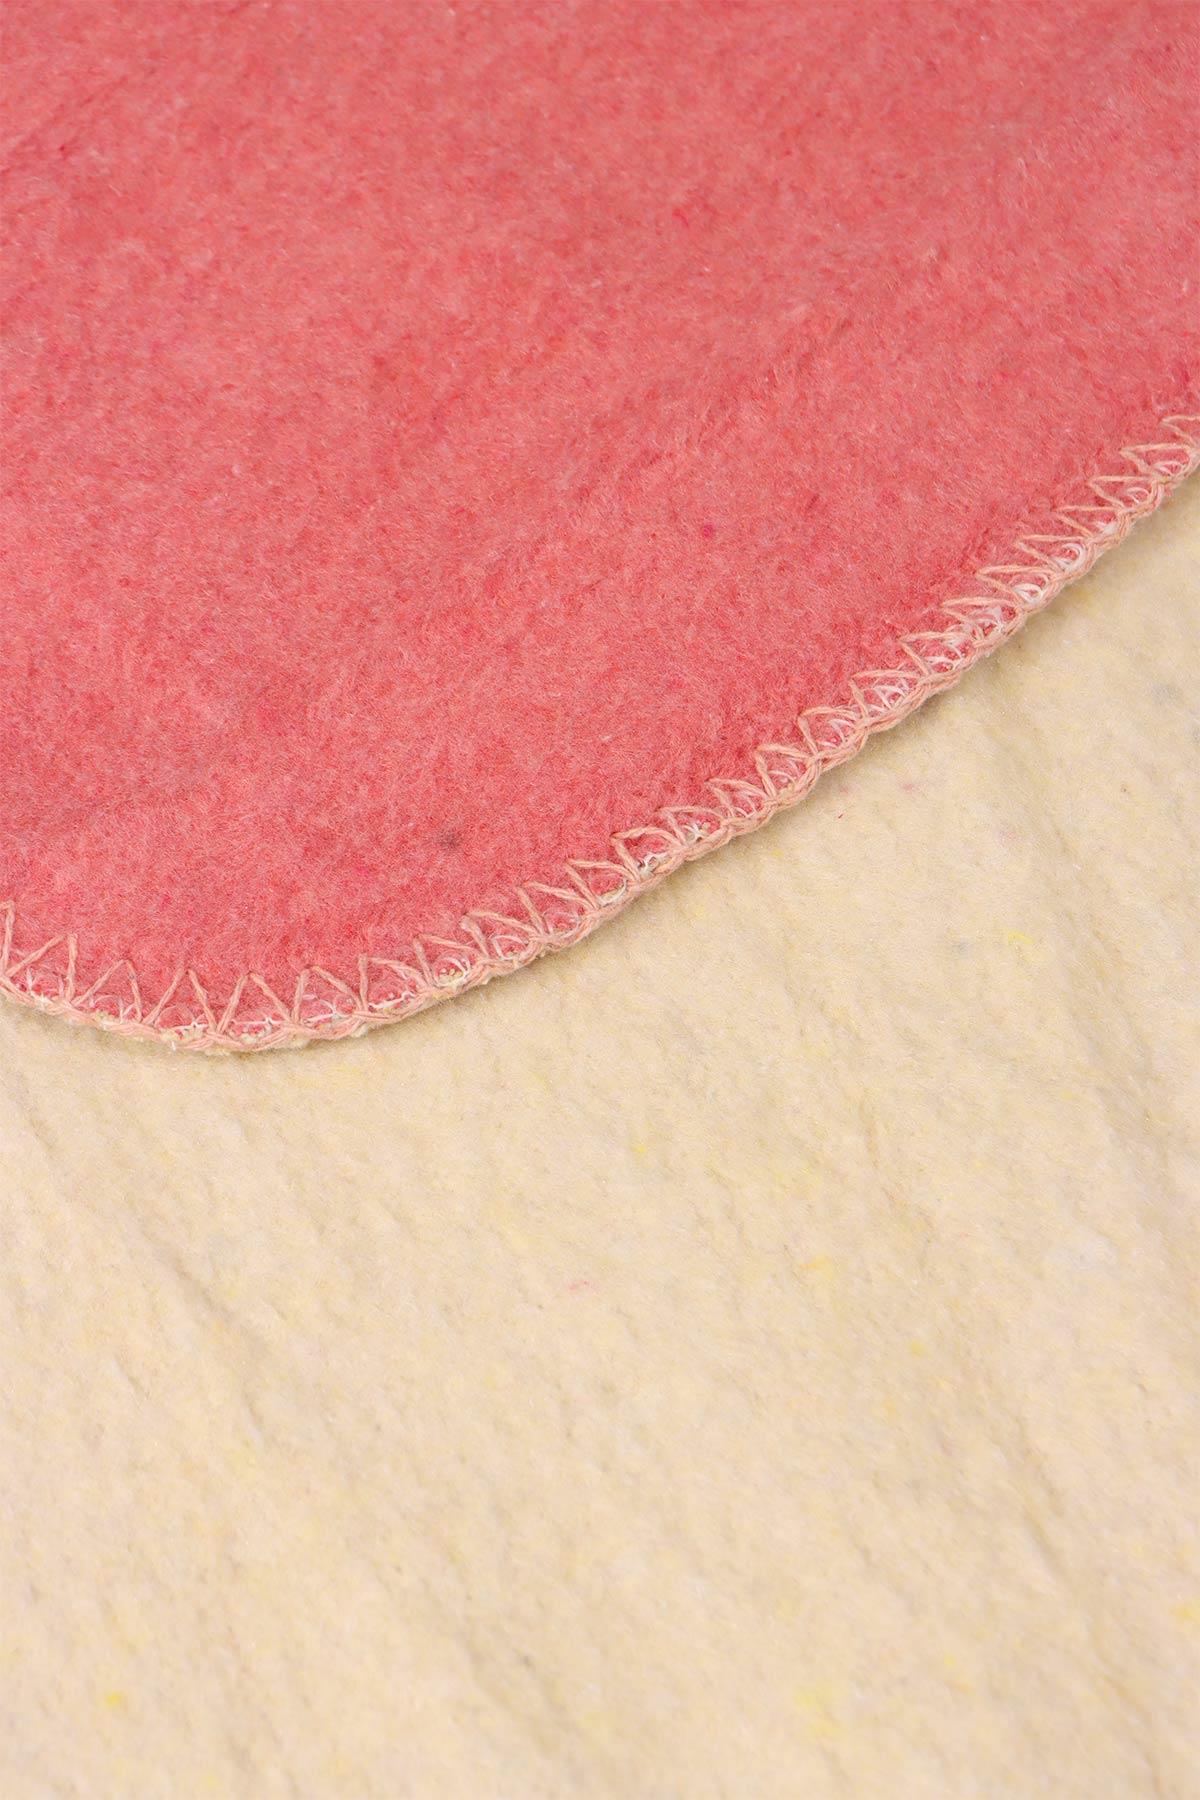 yesilhome tek kisilik pamuk battaniye cift tarafli battaniye pembe krem 120035.jpg